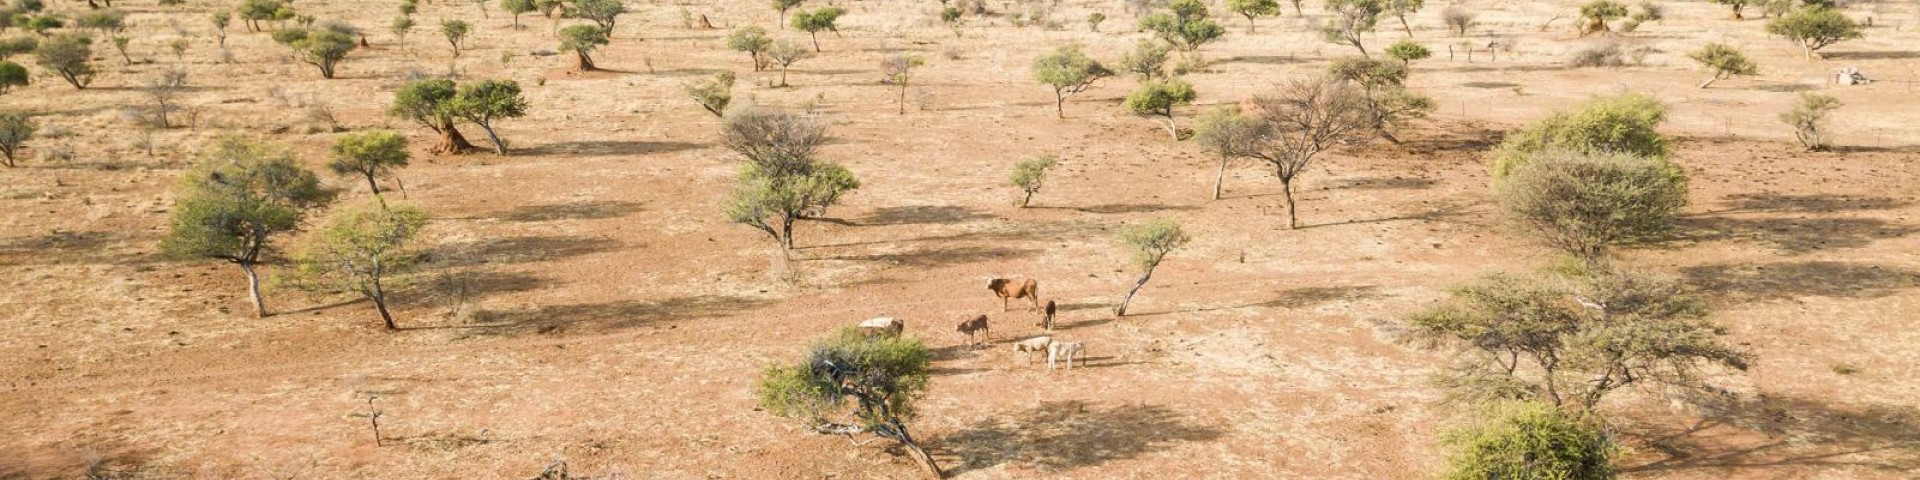 Nutztiere grasen auf einer kargen Landschaft.